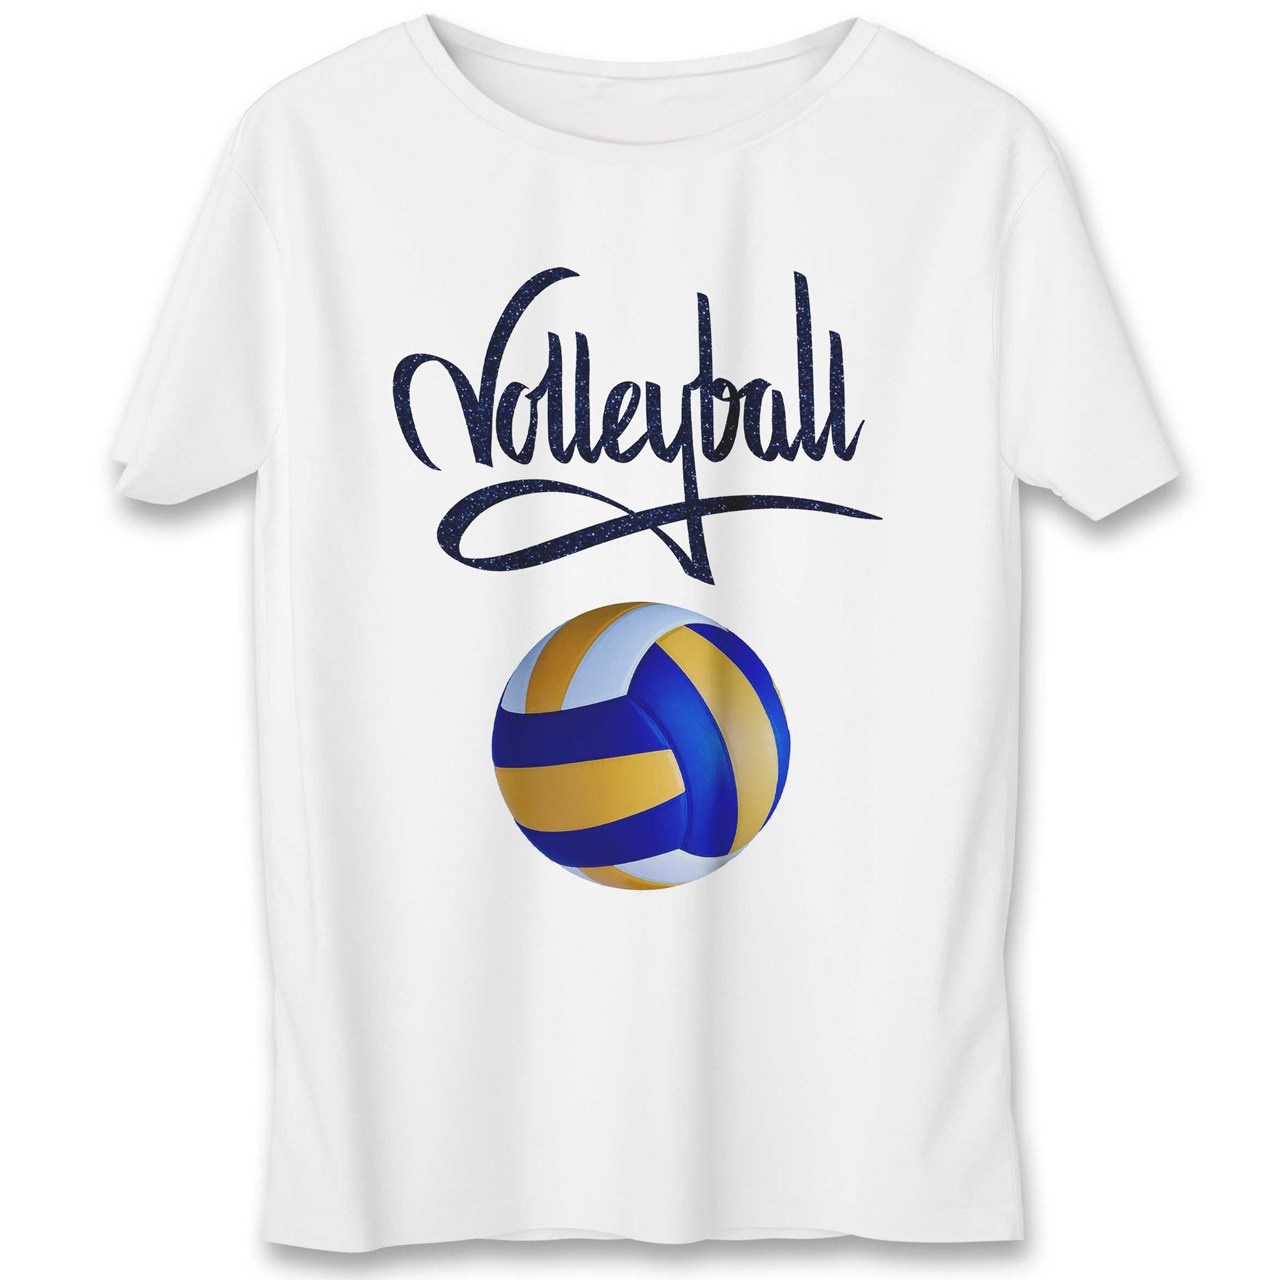 تی شرت یورپرینت به رسم طرح توپ والیبال کد 342